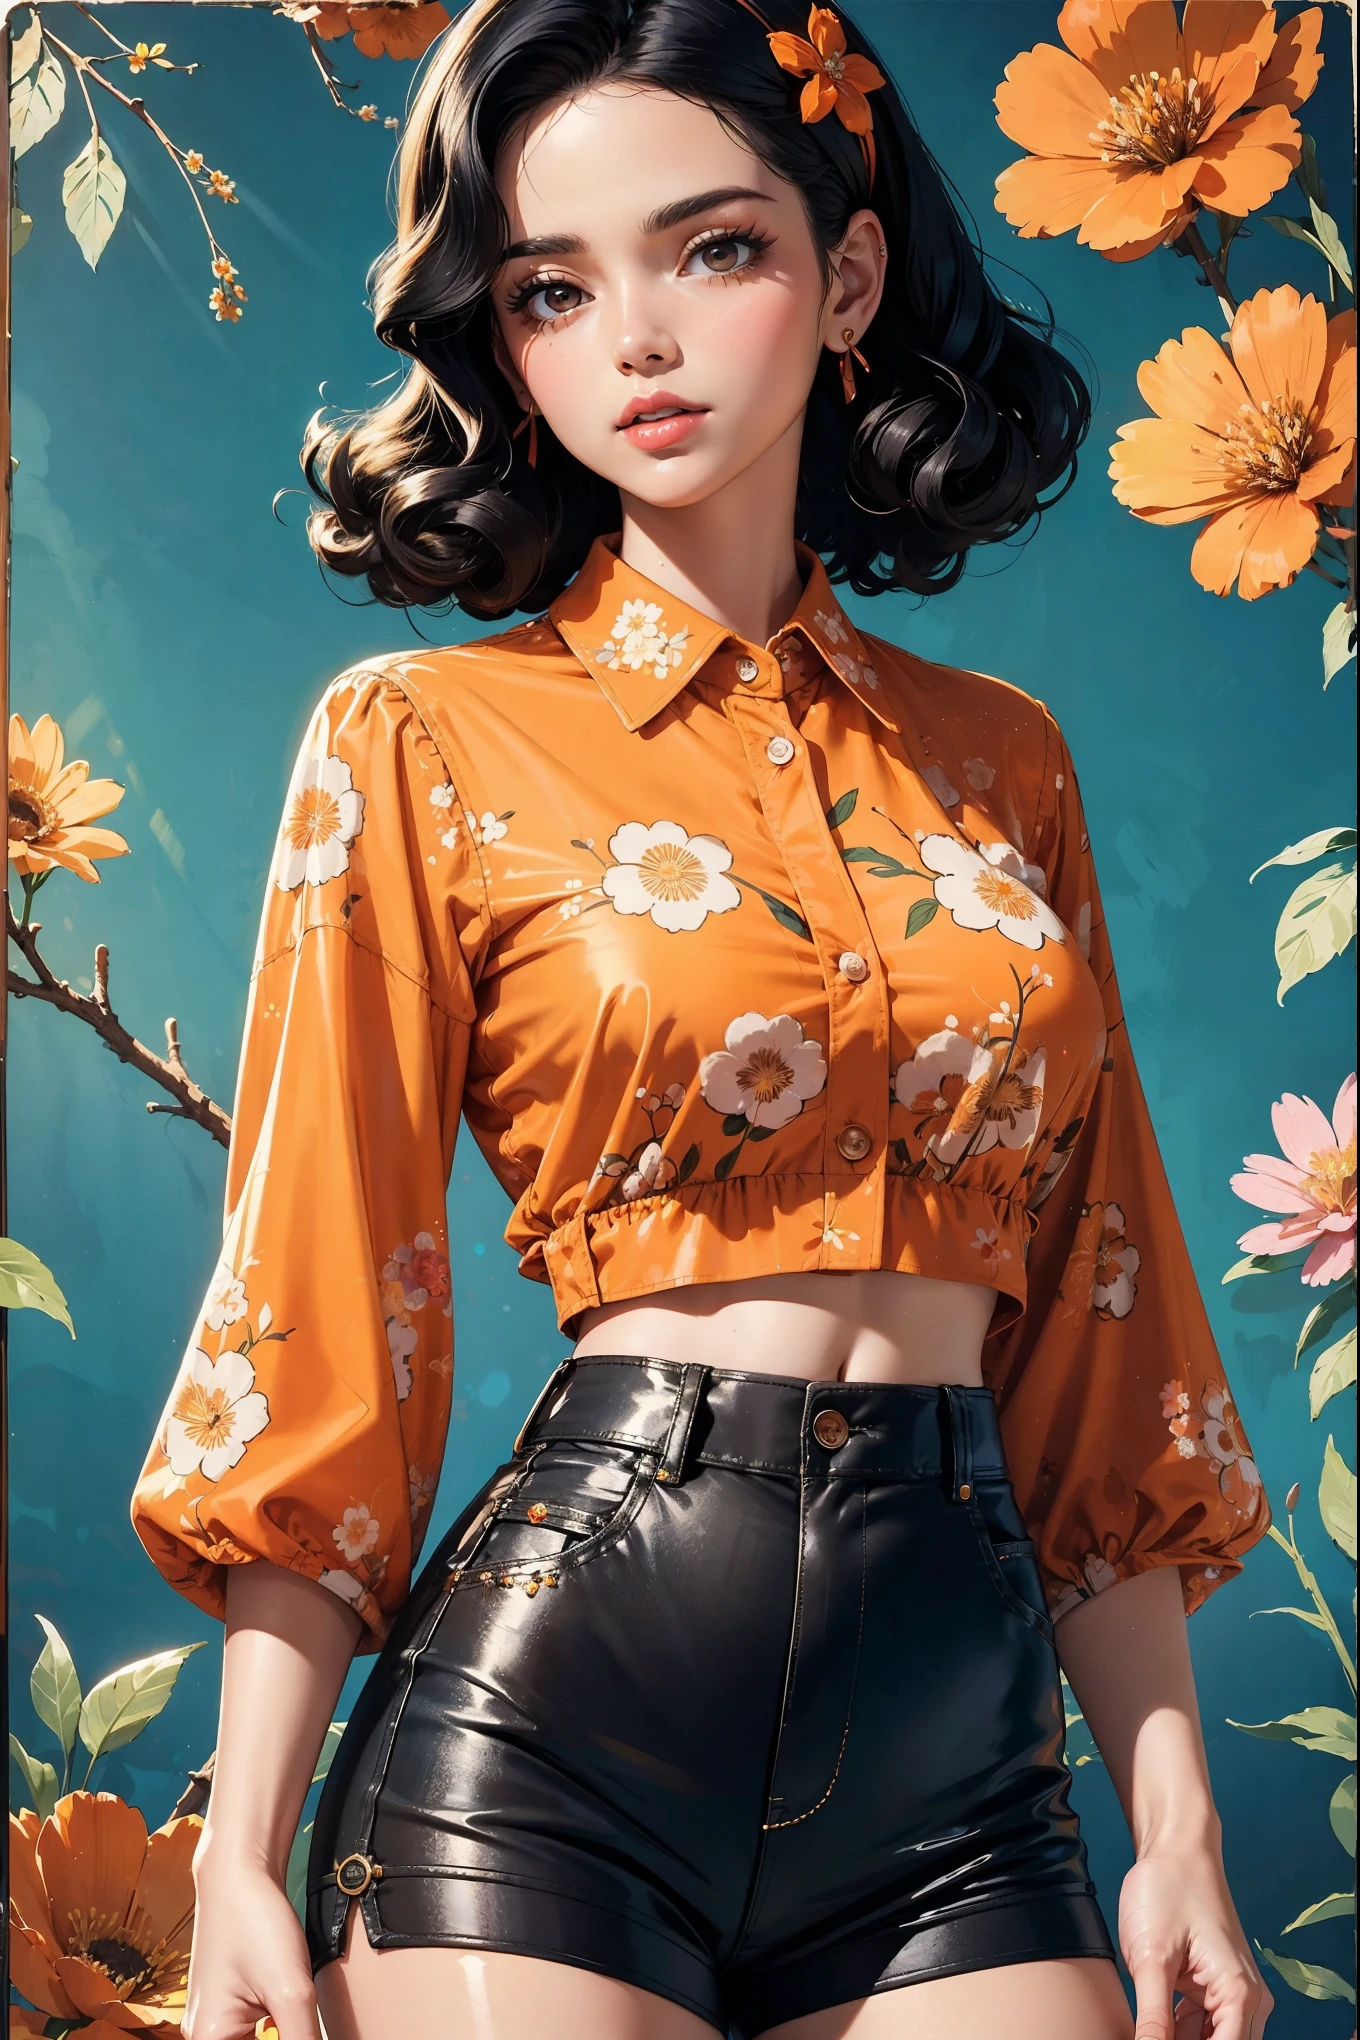 (((傑作))), トップインフルエンサーの女性, 最高品質, 非常に詳細な, キュートでスパンキー, レトロな60年代スタイル, 色白, フラワークリップが付いた短い巻き毛の黒髪, オレンジ色のボタンアップクロップトップ、透明な花柄の袖, 茶色のハイウエストボタンアップショーツ, レトロな背景
